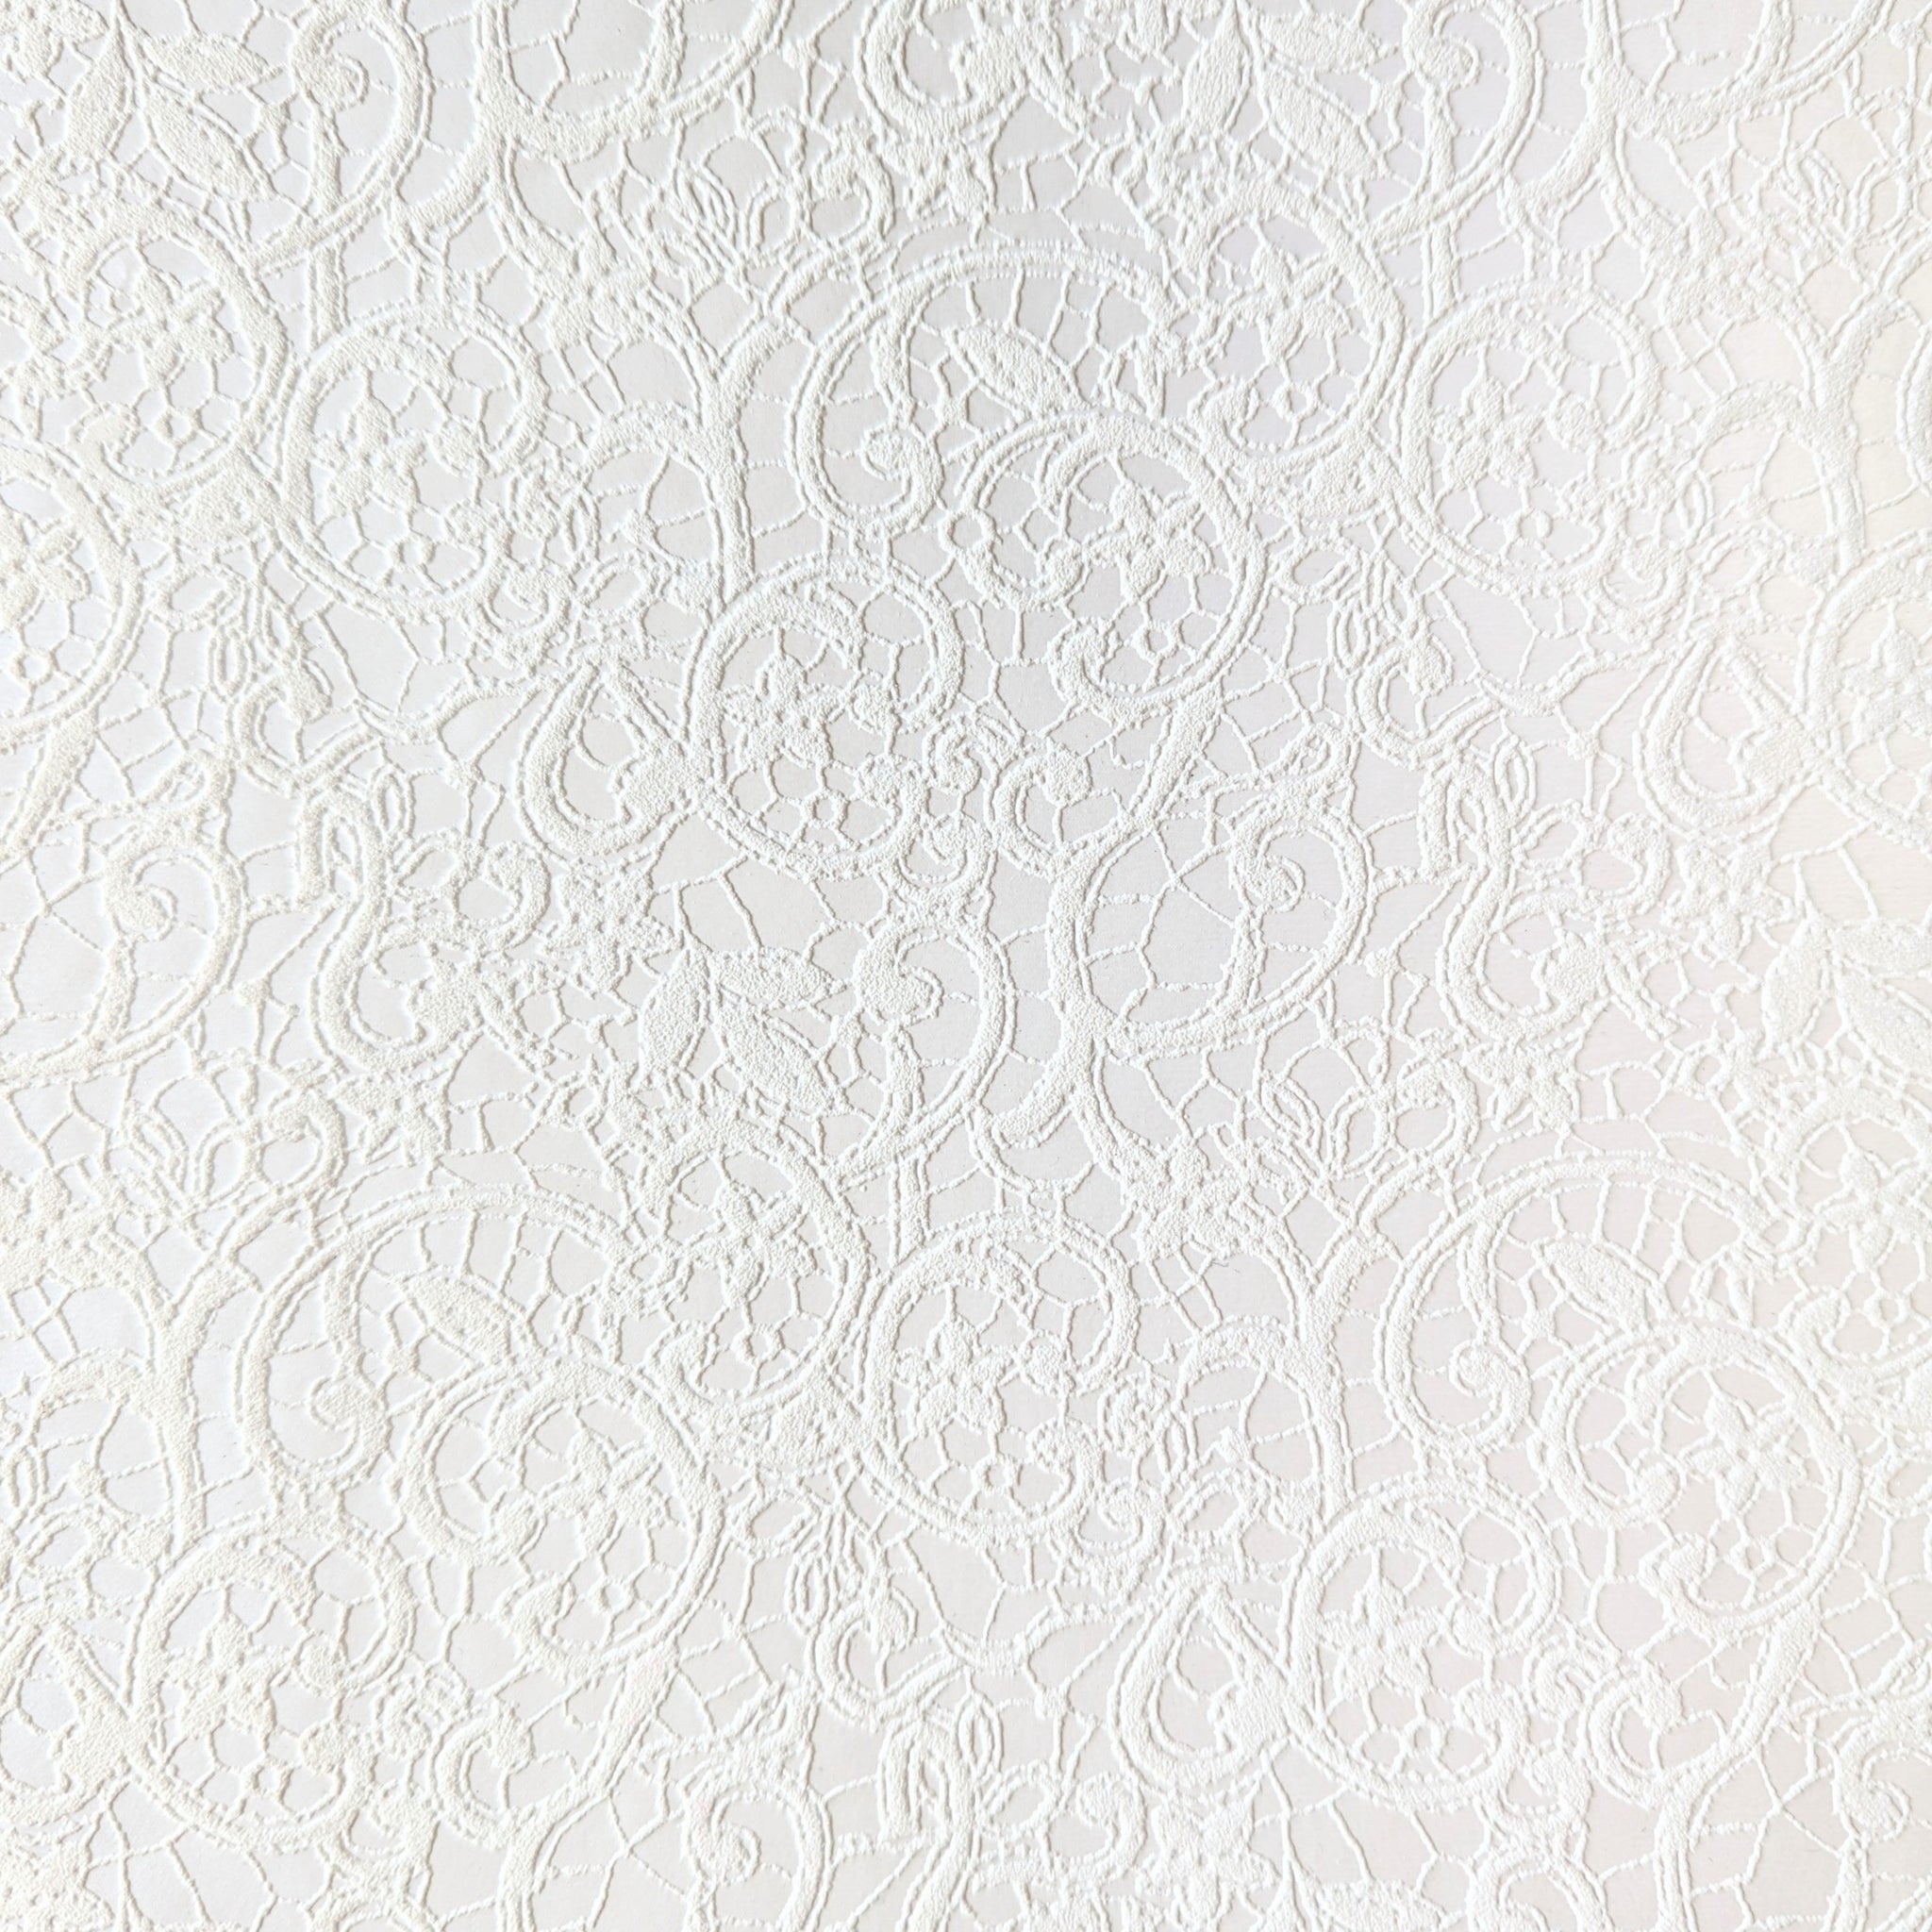 Calabrian White Book Cloth